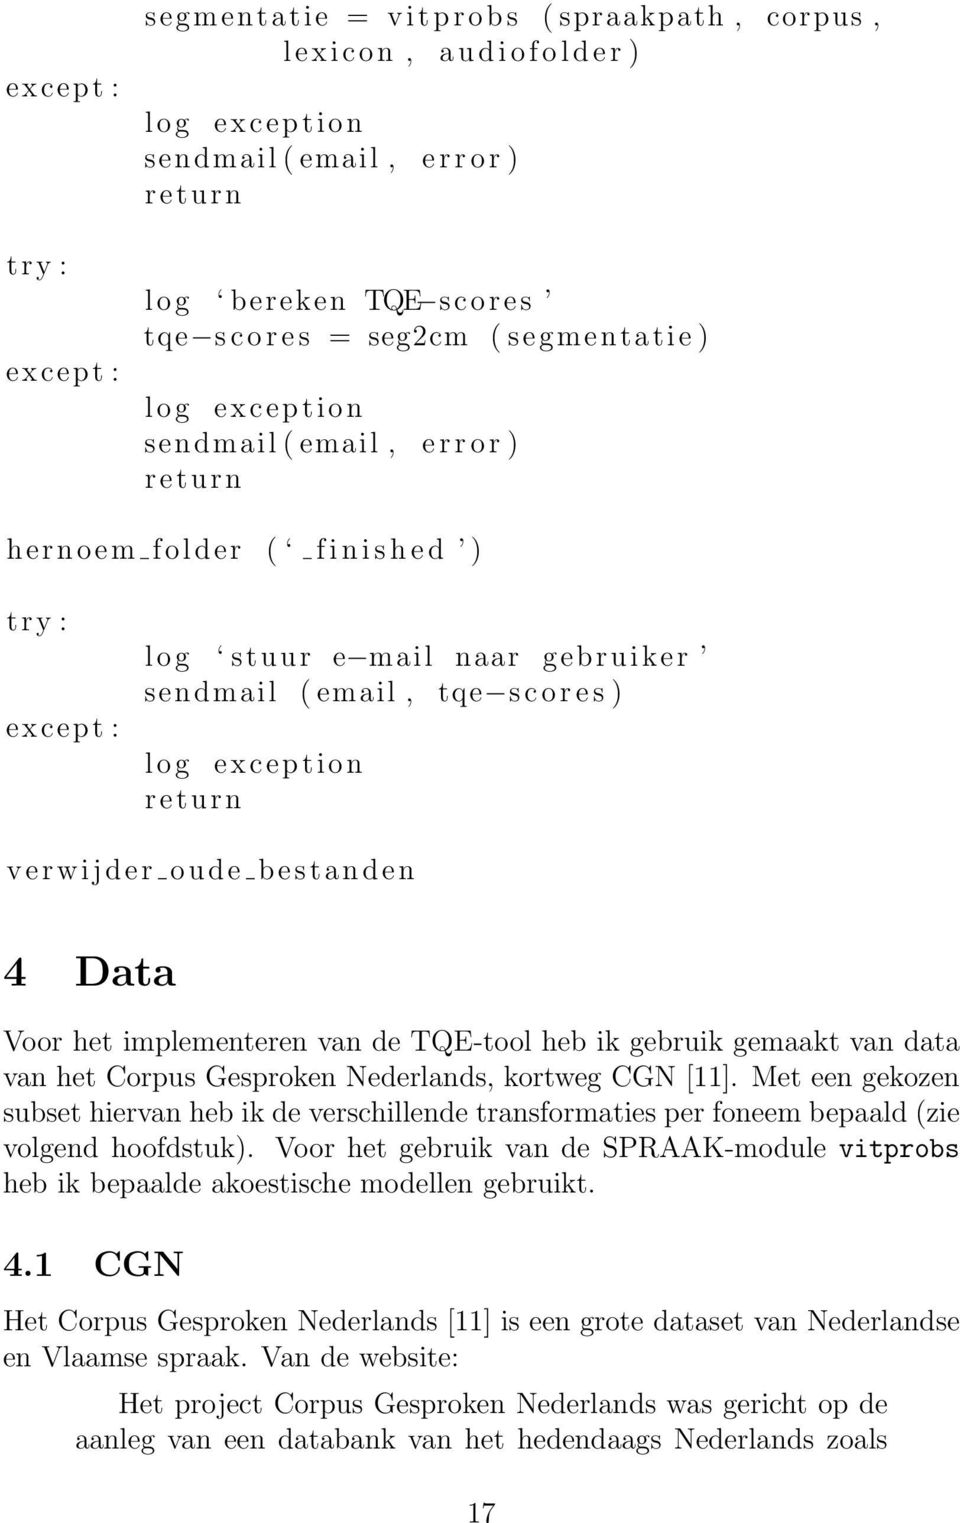 s c o r e s ) l o g exception return verwijder oude bestanden 4 Data Voor het implementeren van de TQE-tool heb ik gebruik gemaakt van data van het Corpus Gesproken Nederlands, kortweg CGN [11].